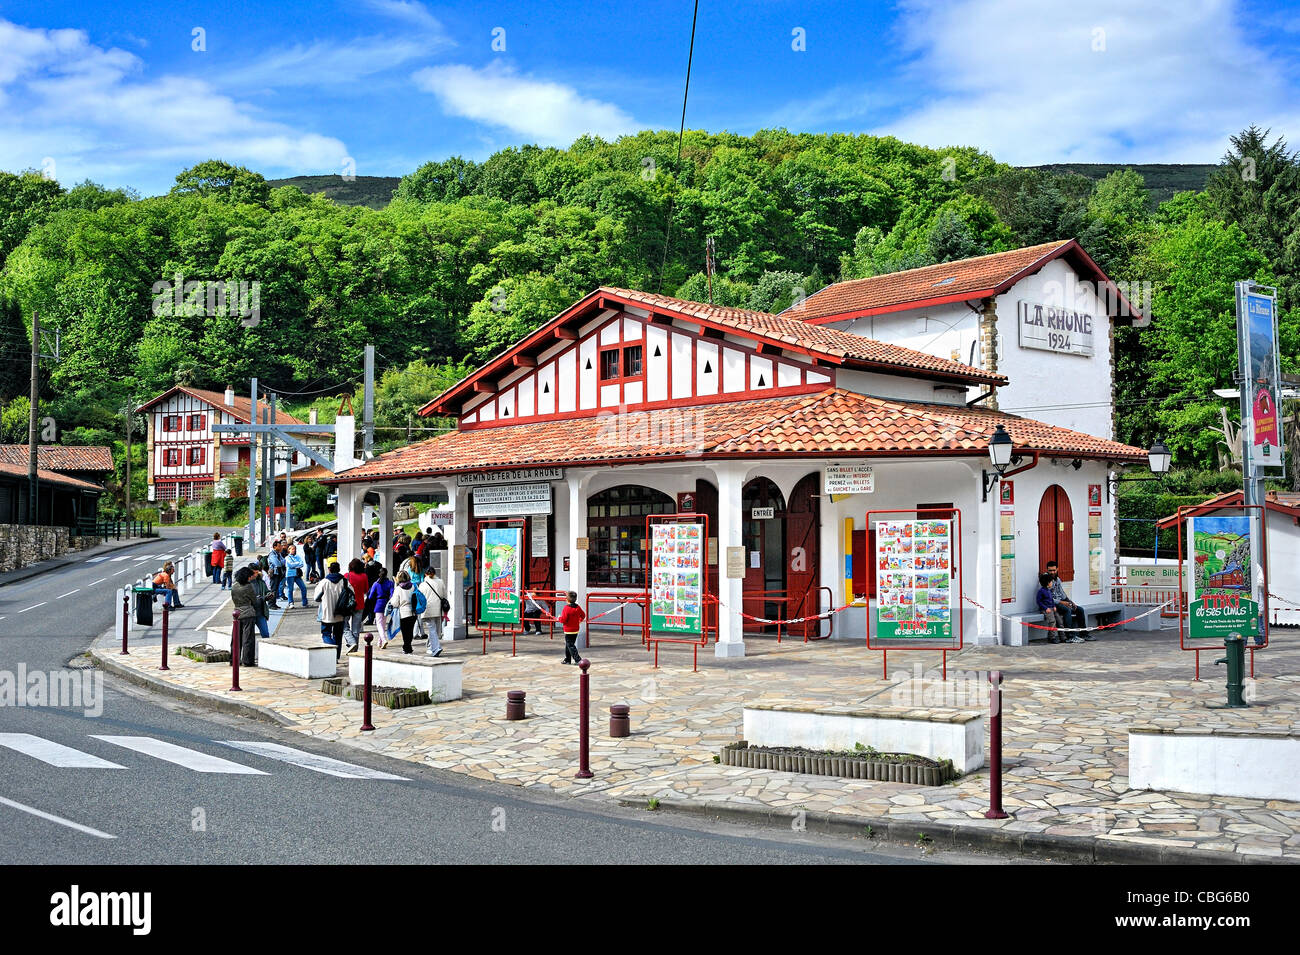 Histórico tren: la estación de tren de la Rhune, Francia. Foto de stock